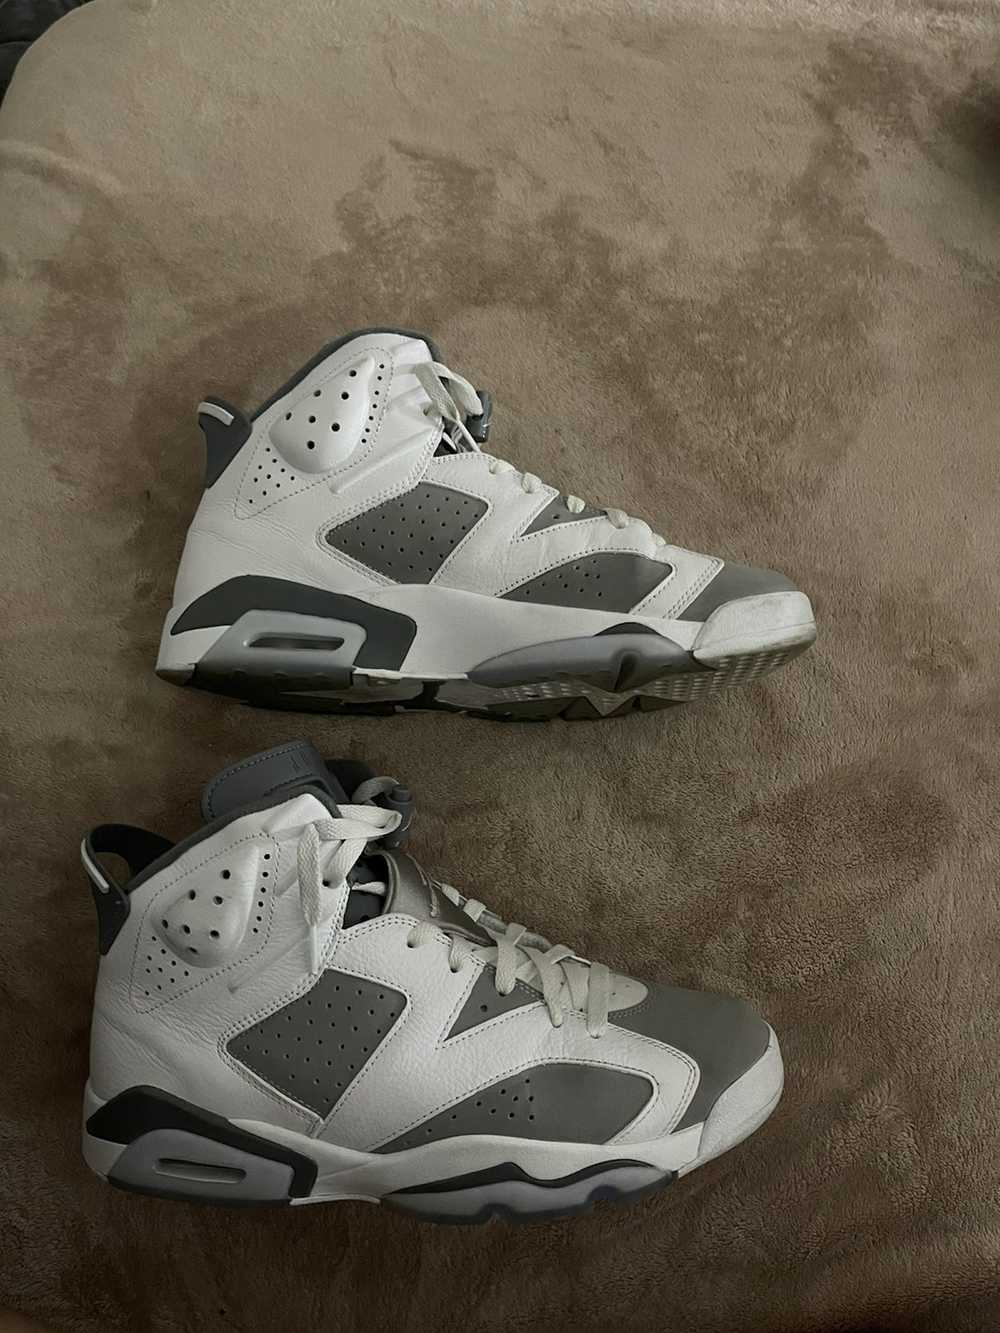 Jordan Brand Jordan 6s “Cool Grey” - image 2